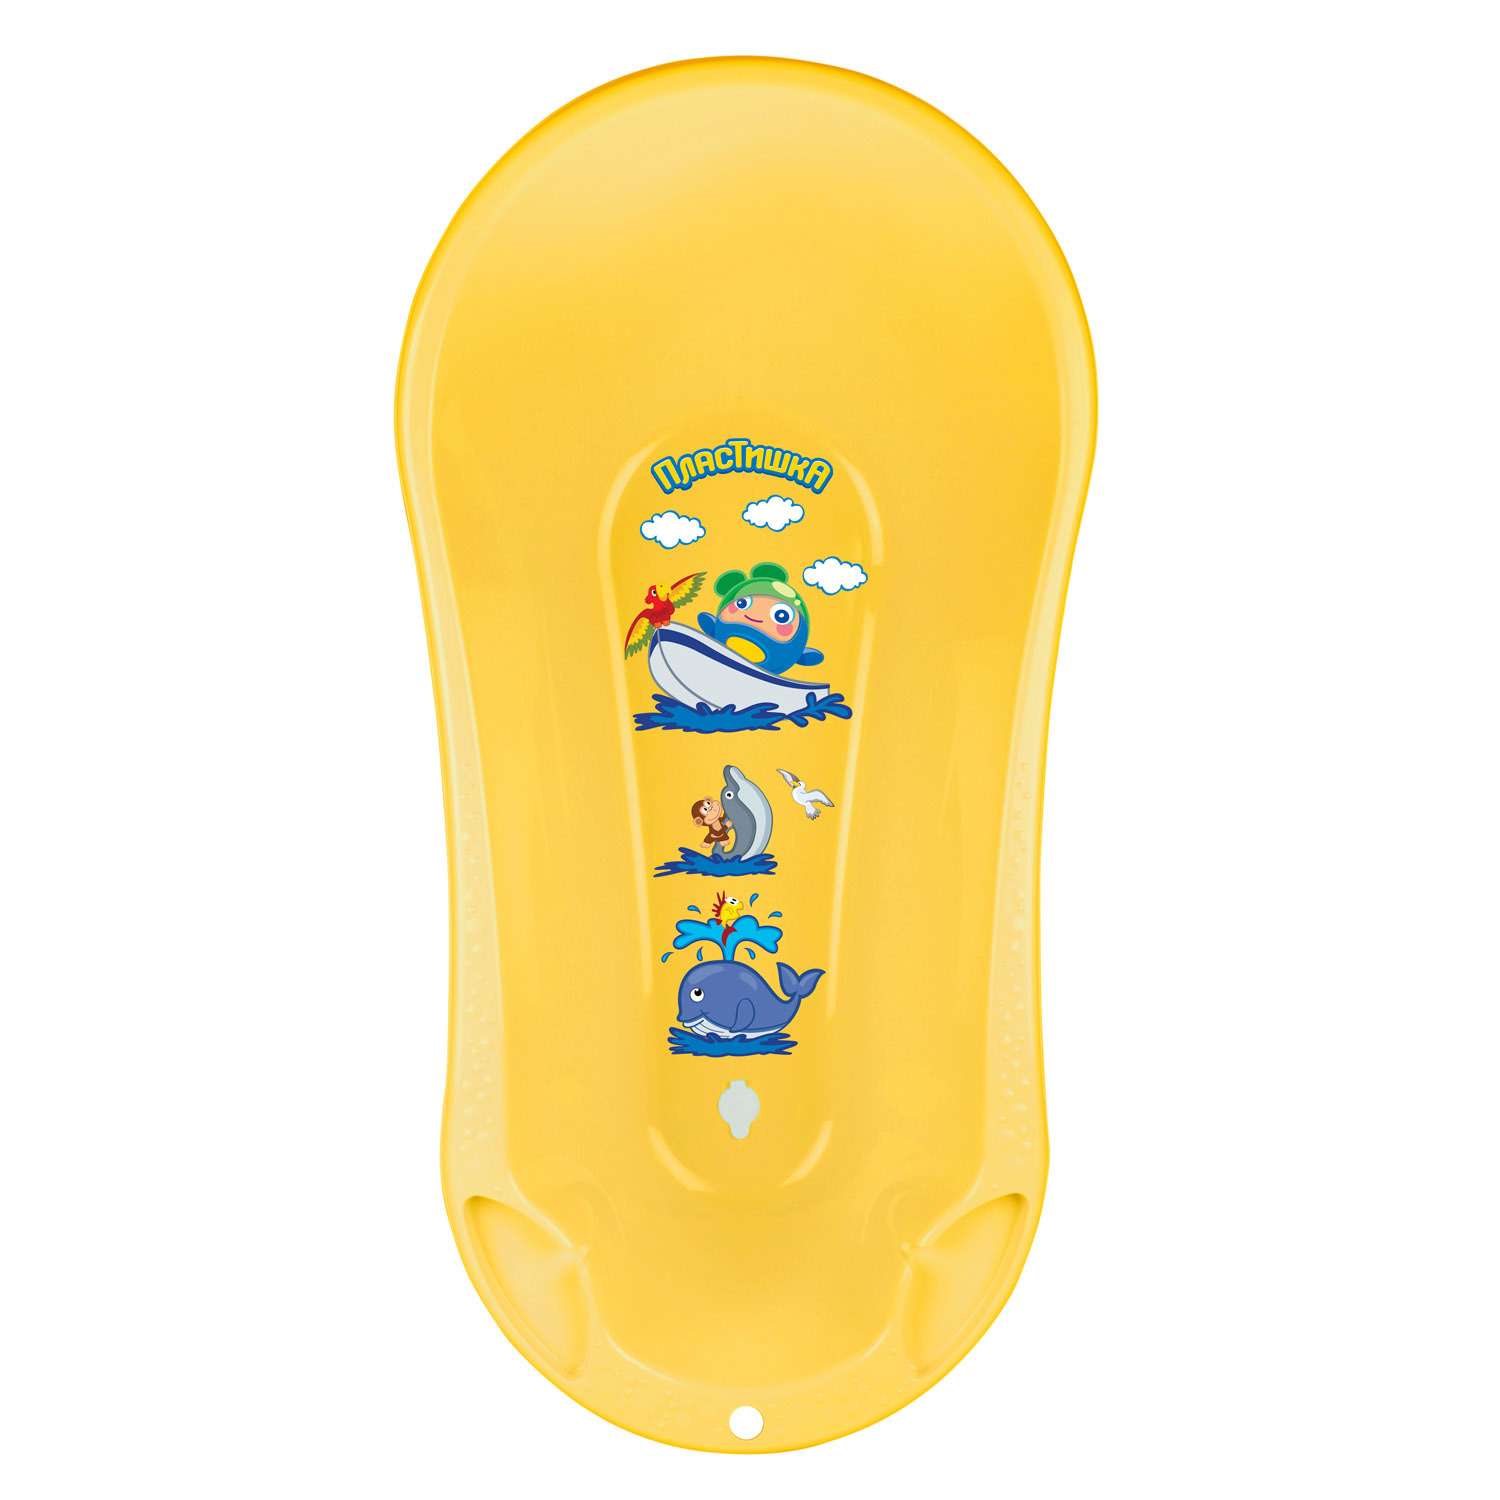 Ванна детская Пластишка со сливом и аппликацией желтая - фото 2